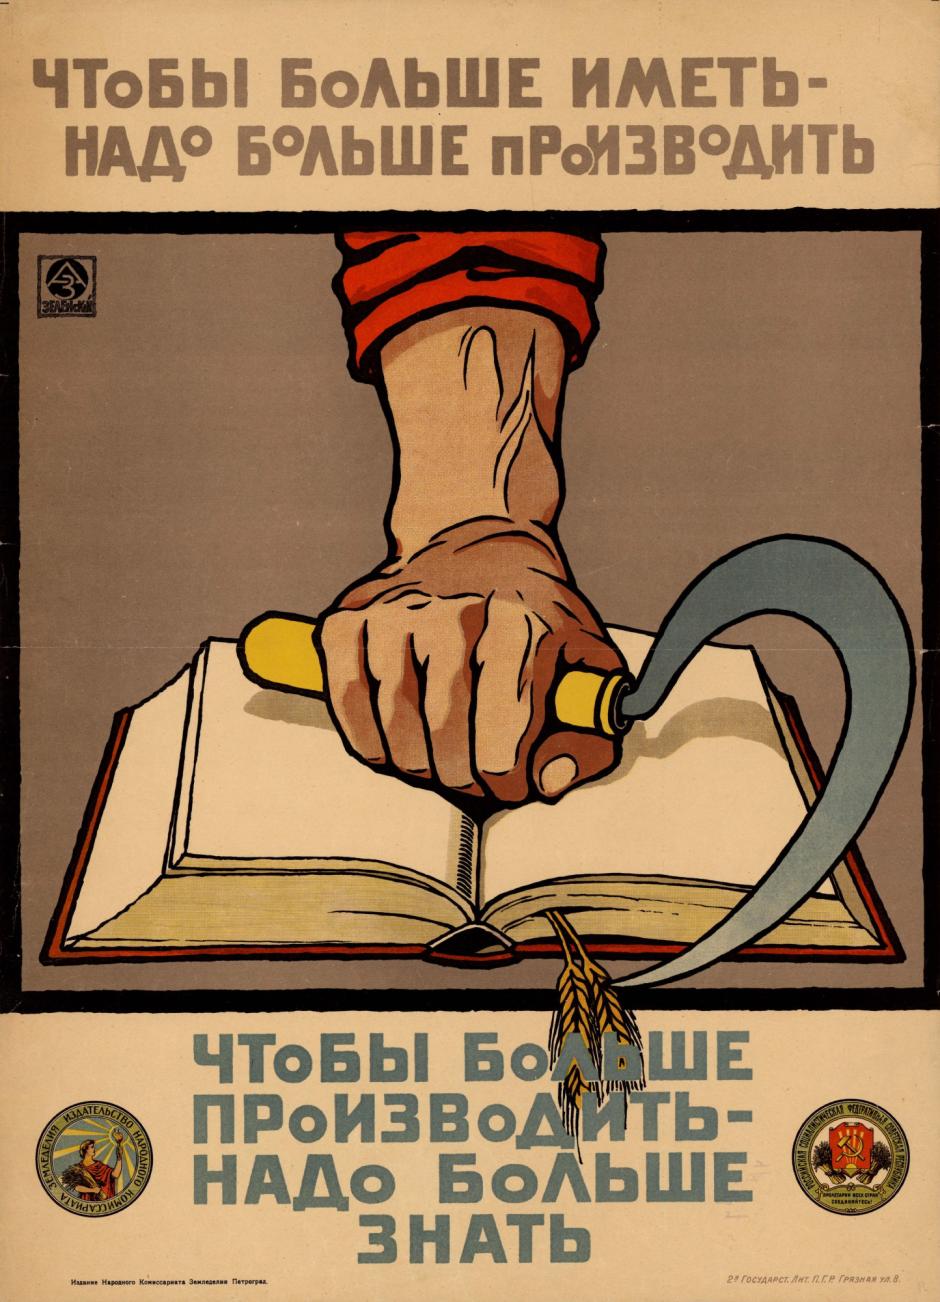 Cartel soviético en favor de la alfabetización